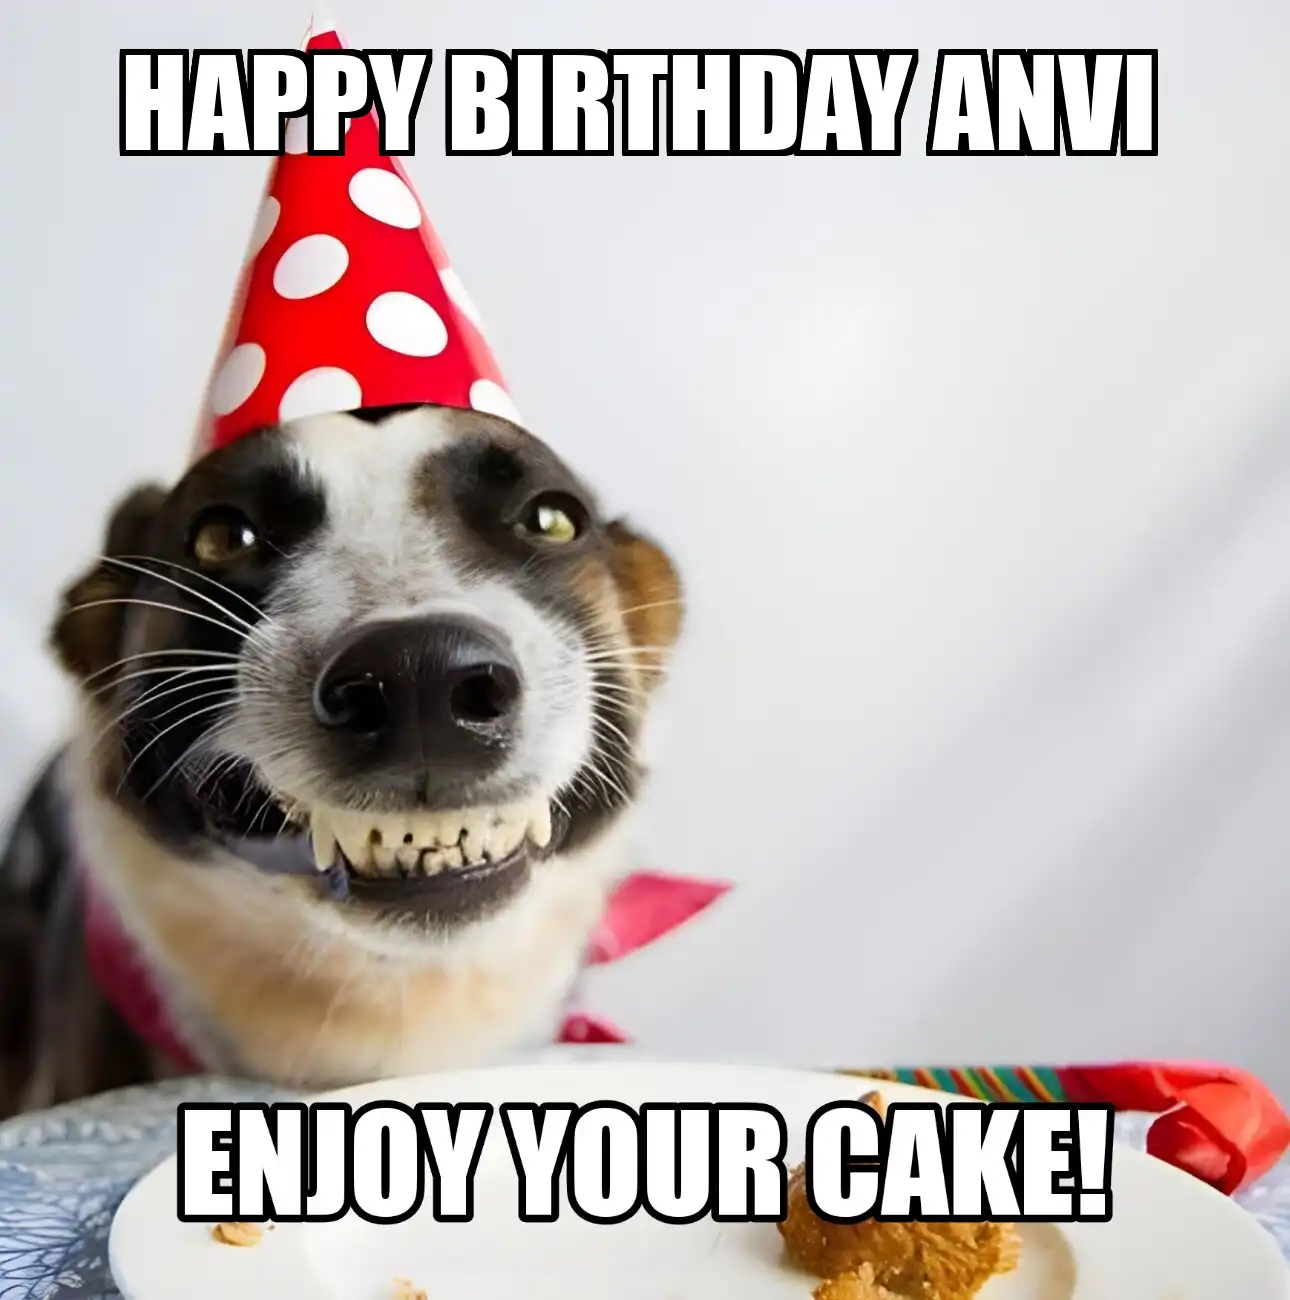 Happy Birthday Anvi Enjoy Your Cake Dog Meme